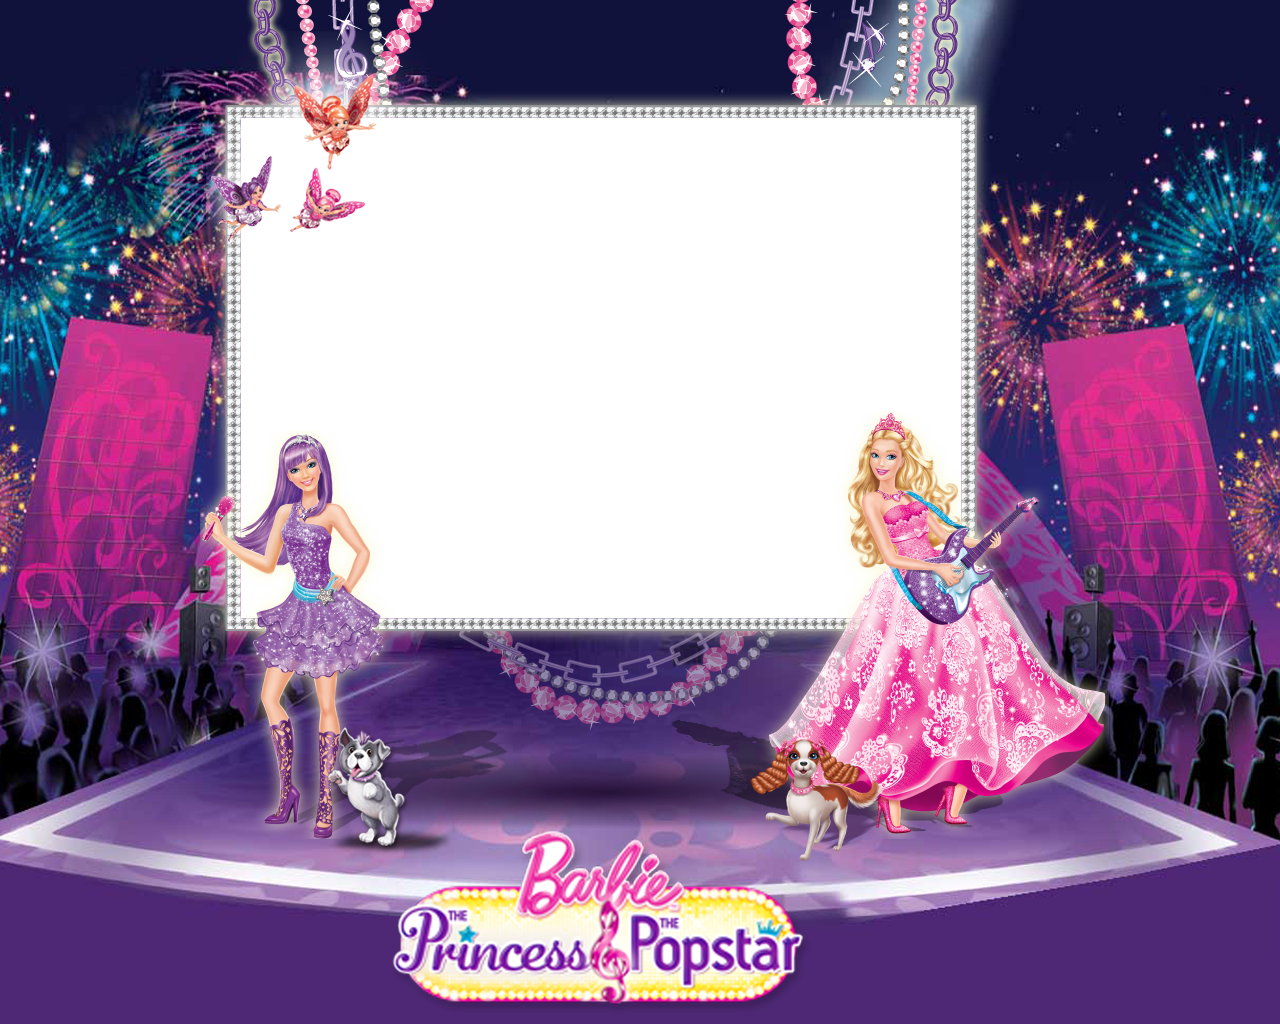 bpp(Barbie a princesa e a popstar) Photo frame effect